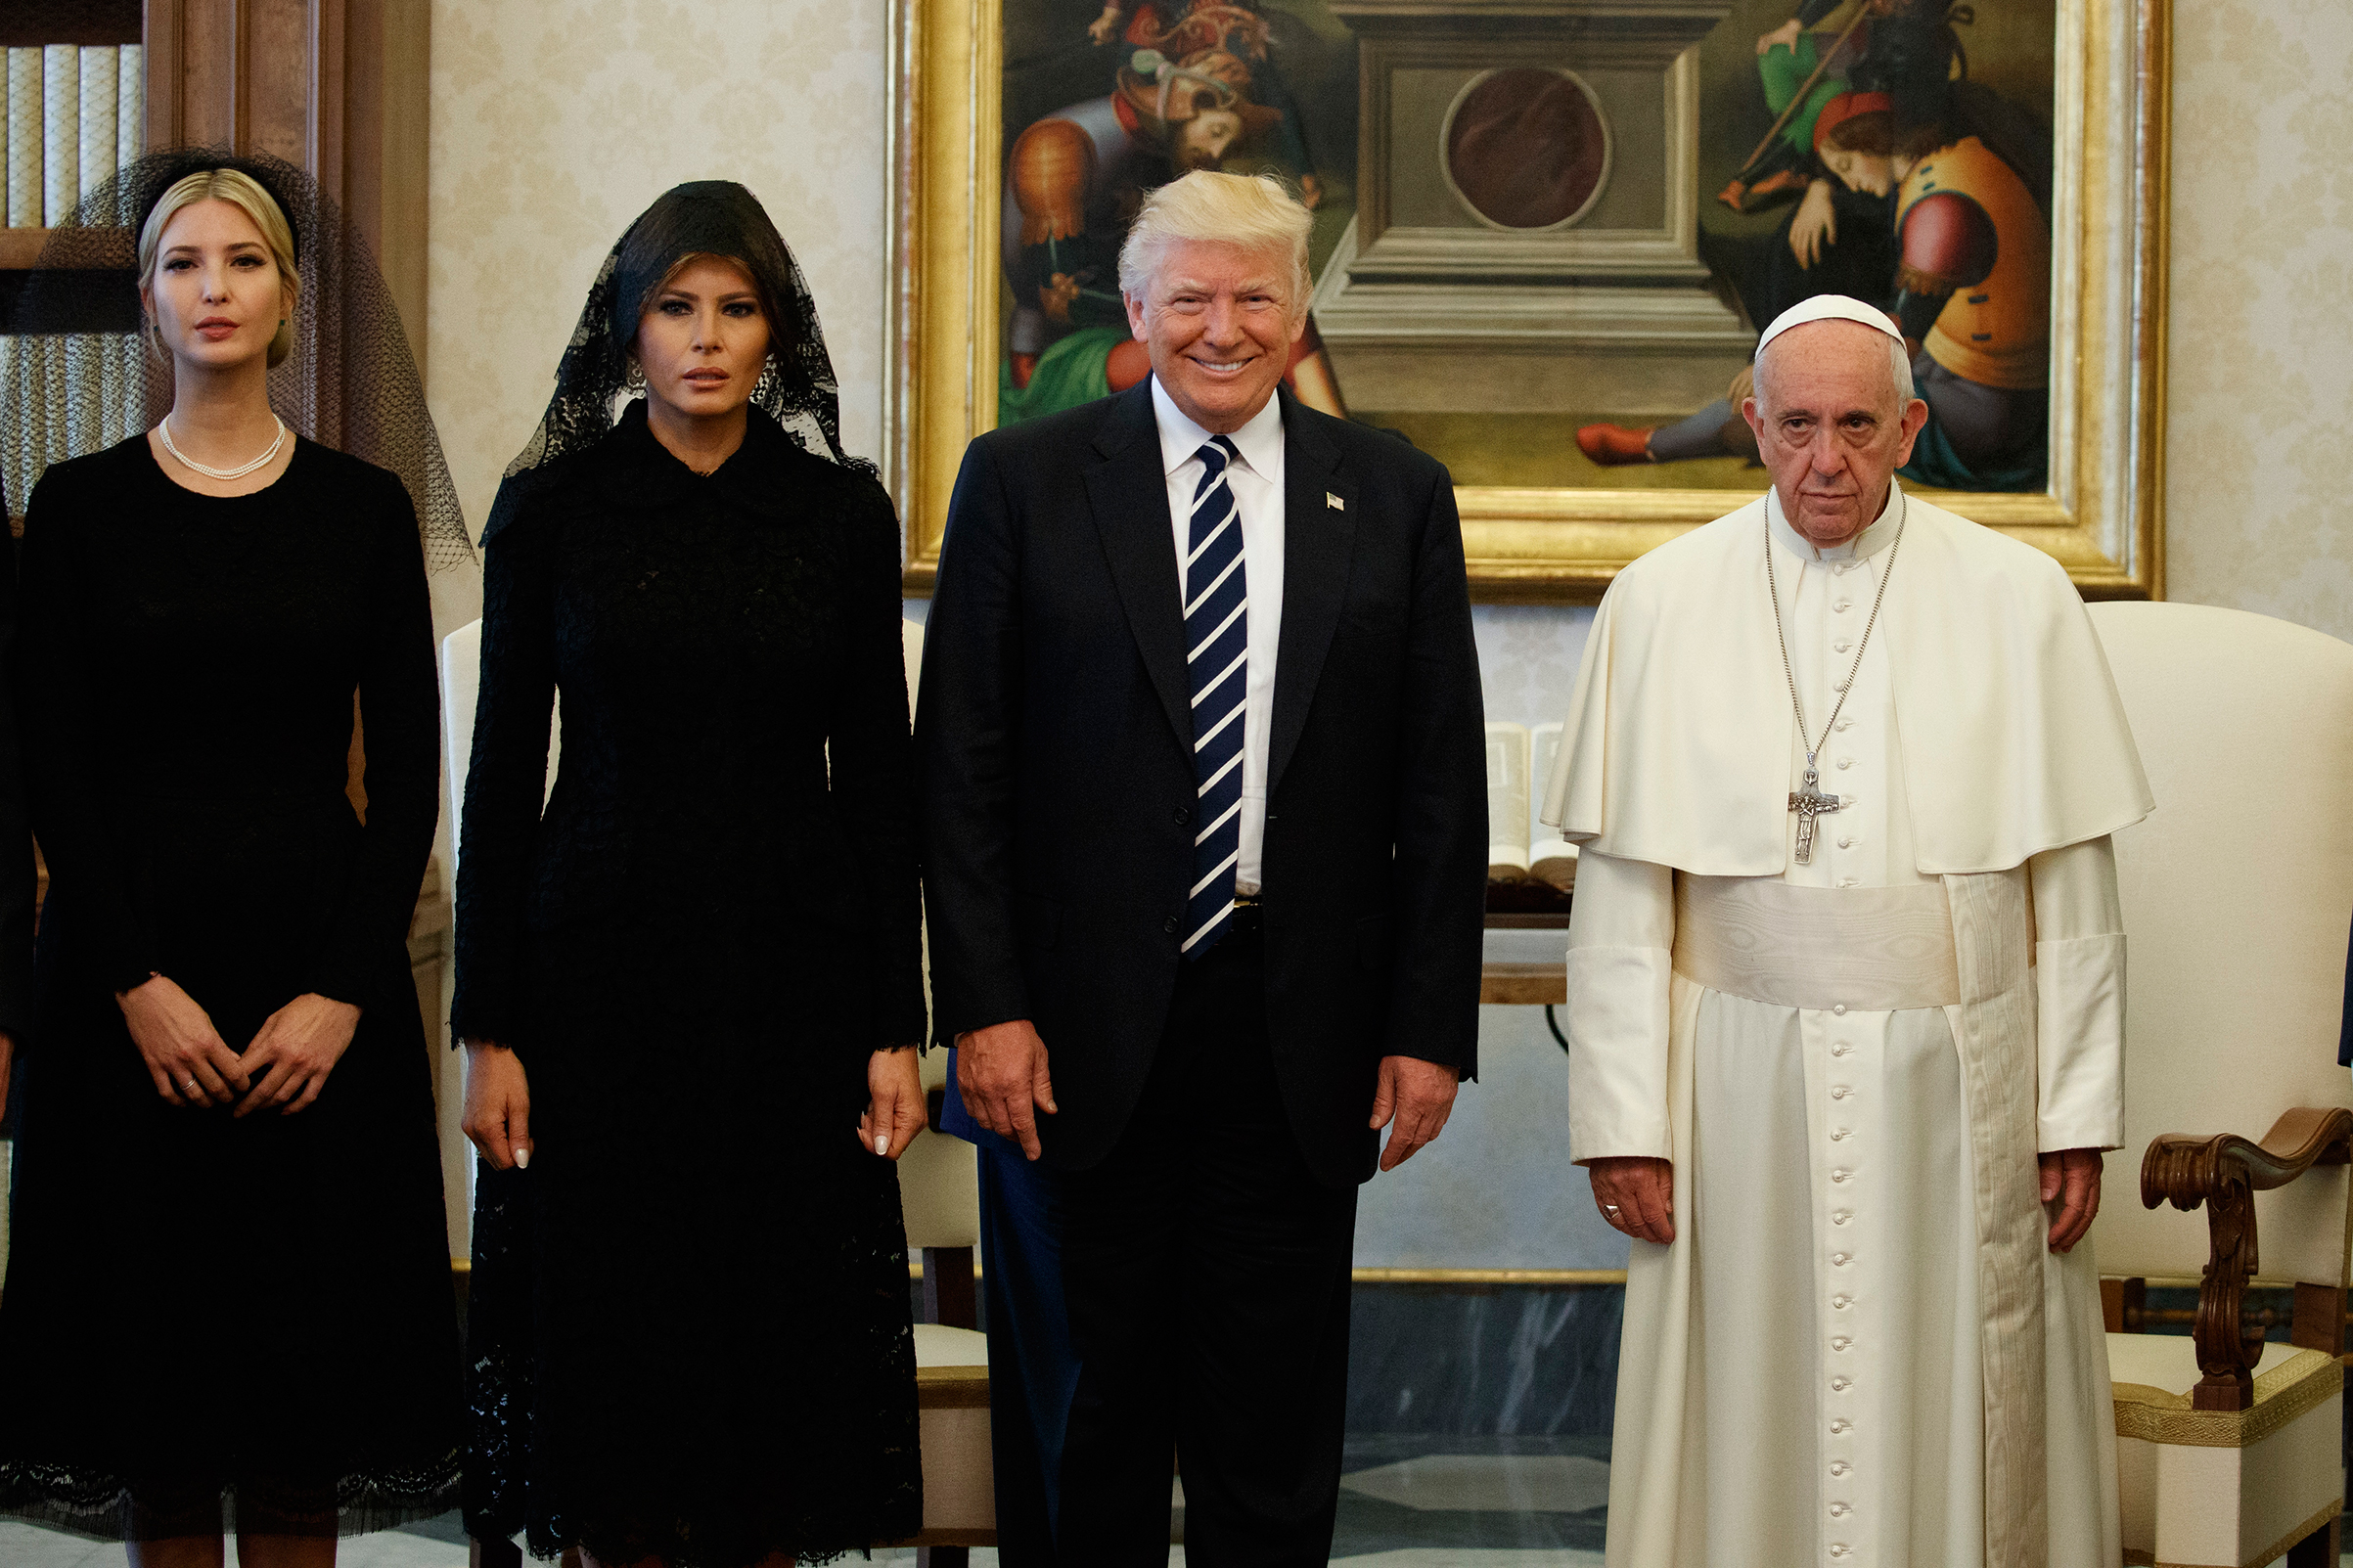 pope-francis-donald-trump-vatican-veils